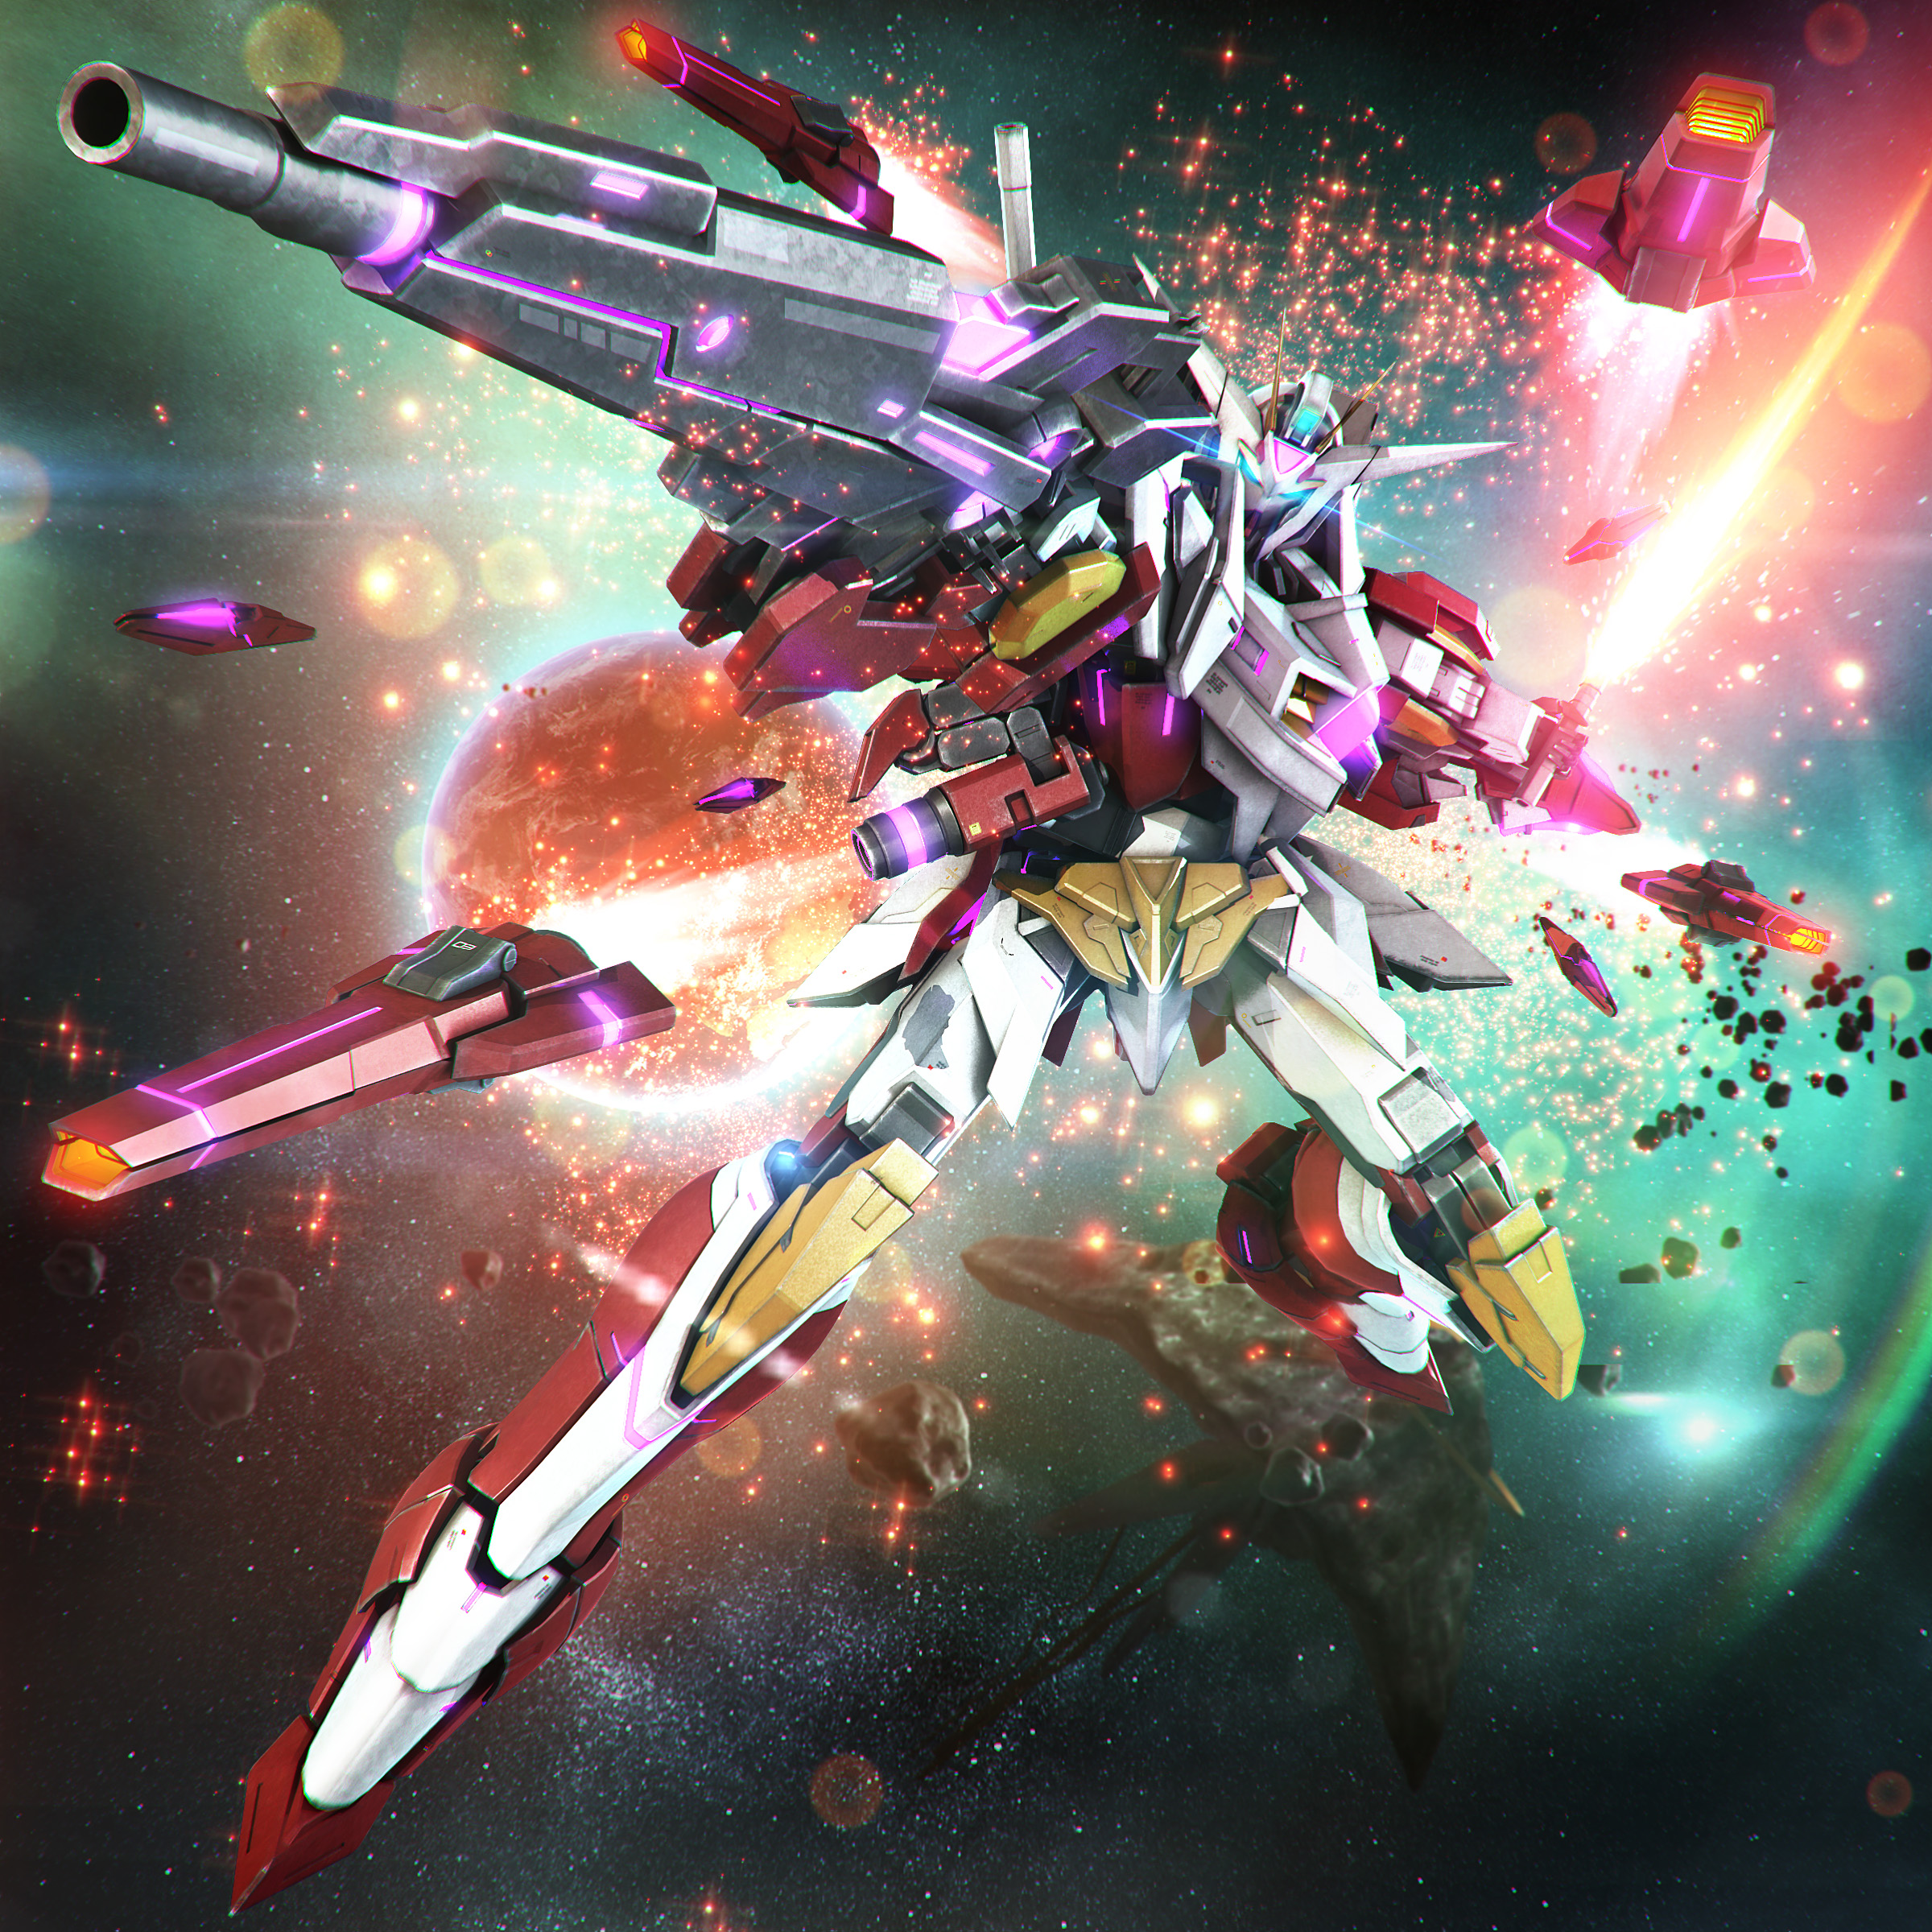 Anime Mechs Gundam Super Robot Wars Mobile Suit Gundam 00 Reborns Gundam Artwork Digital Art Fan Art 2400x2400